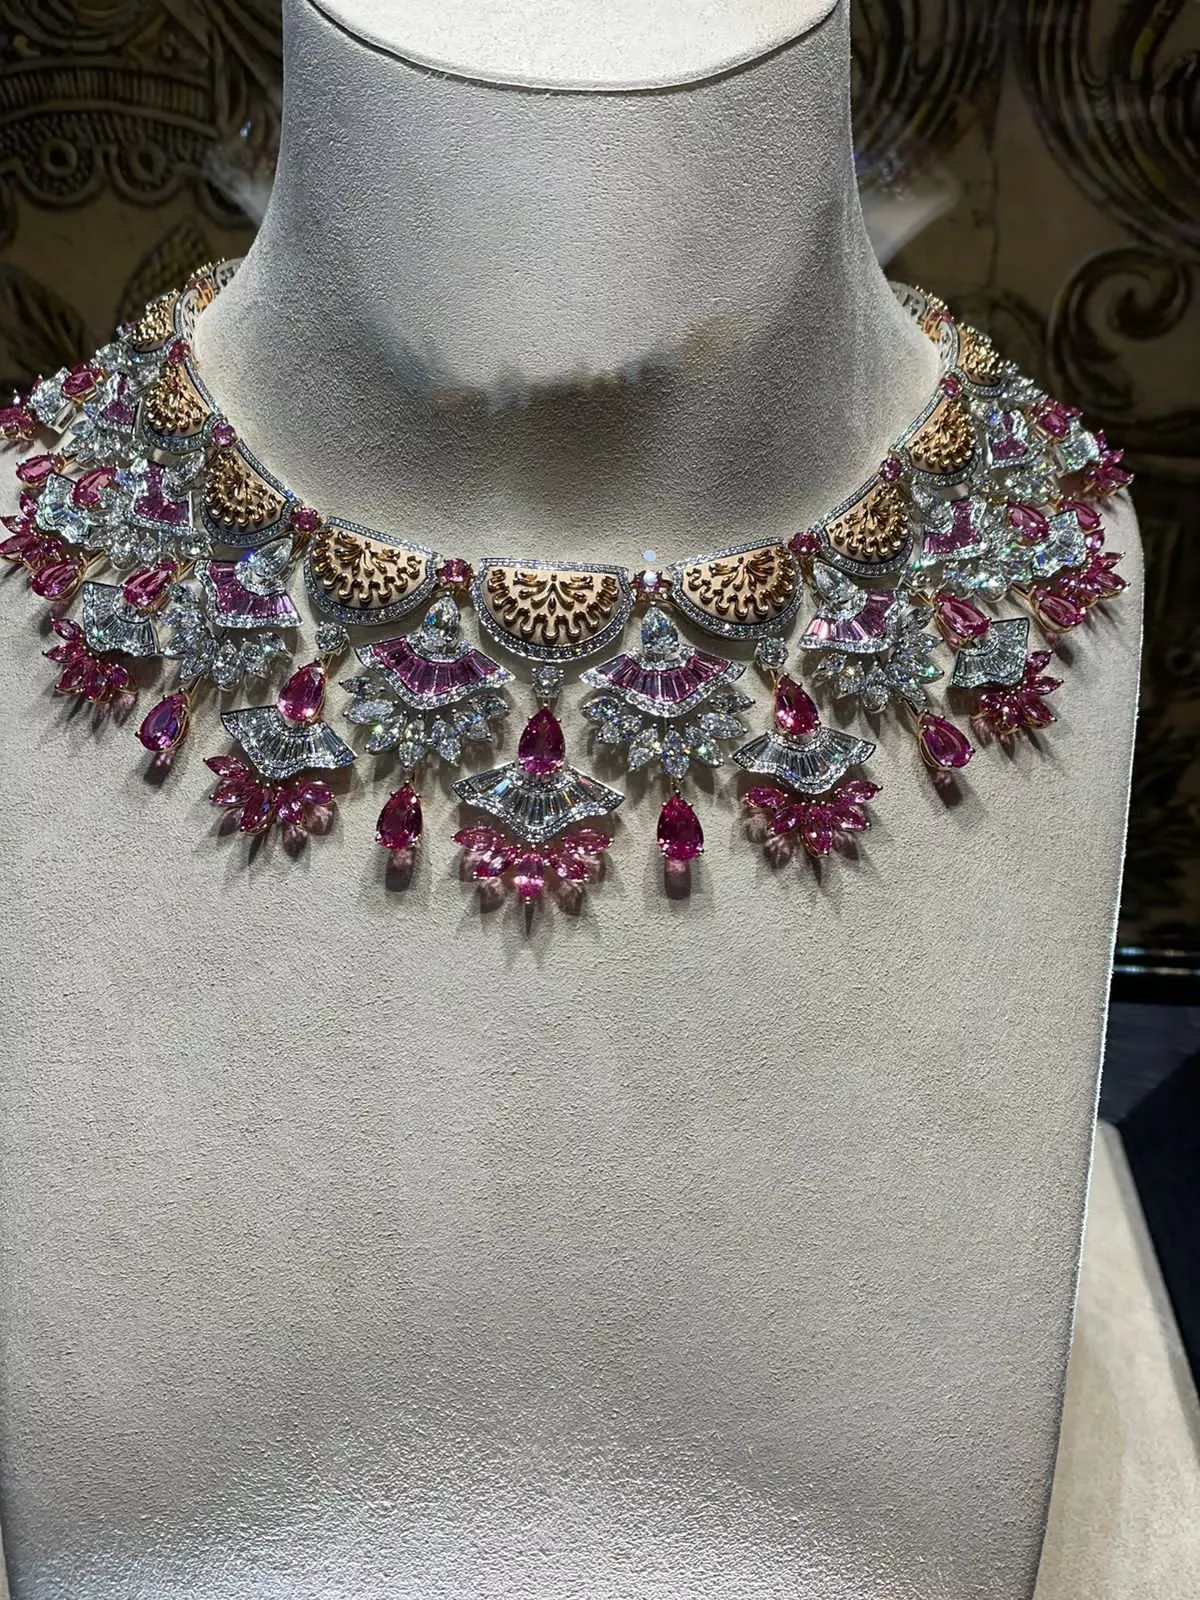 شوبارد تكشف عن مجوهرات وأحجار كريمة نادرة خلال أسبوع الموضة الباريسي للخياطة الراقية